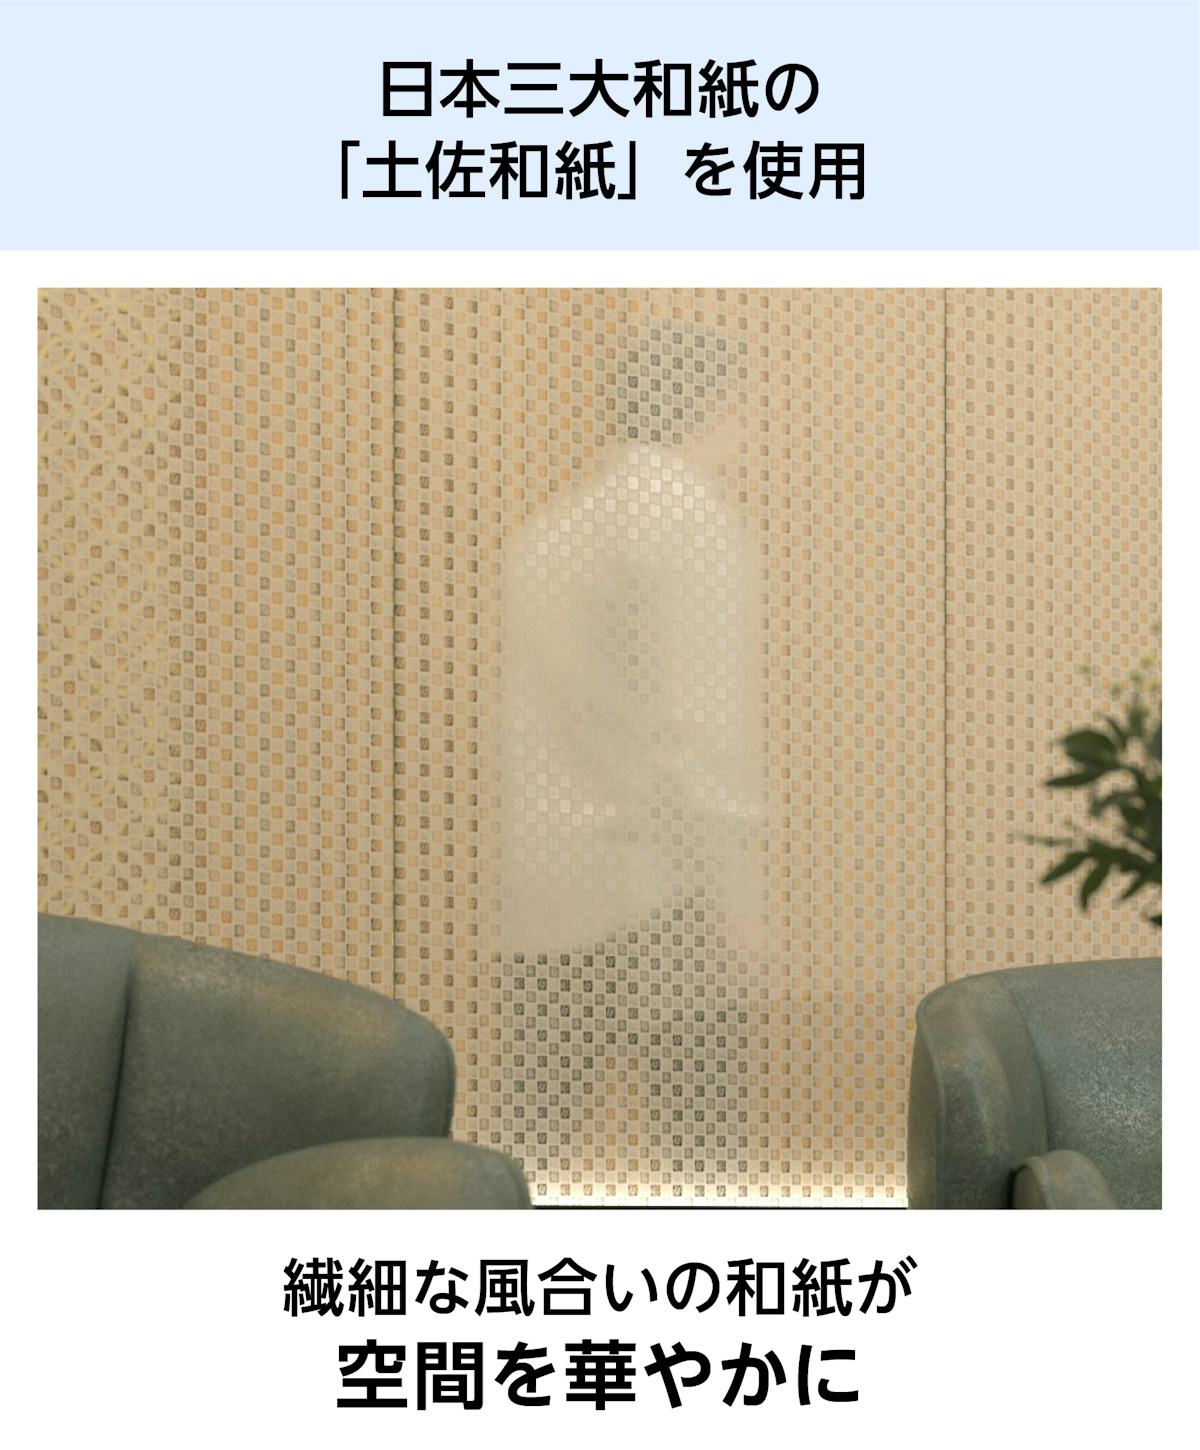 和紙ガラス(和紙調・和風ガラス) - 日本三大和紙の「土佐和紙」を使用